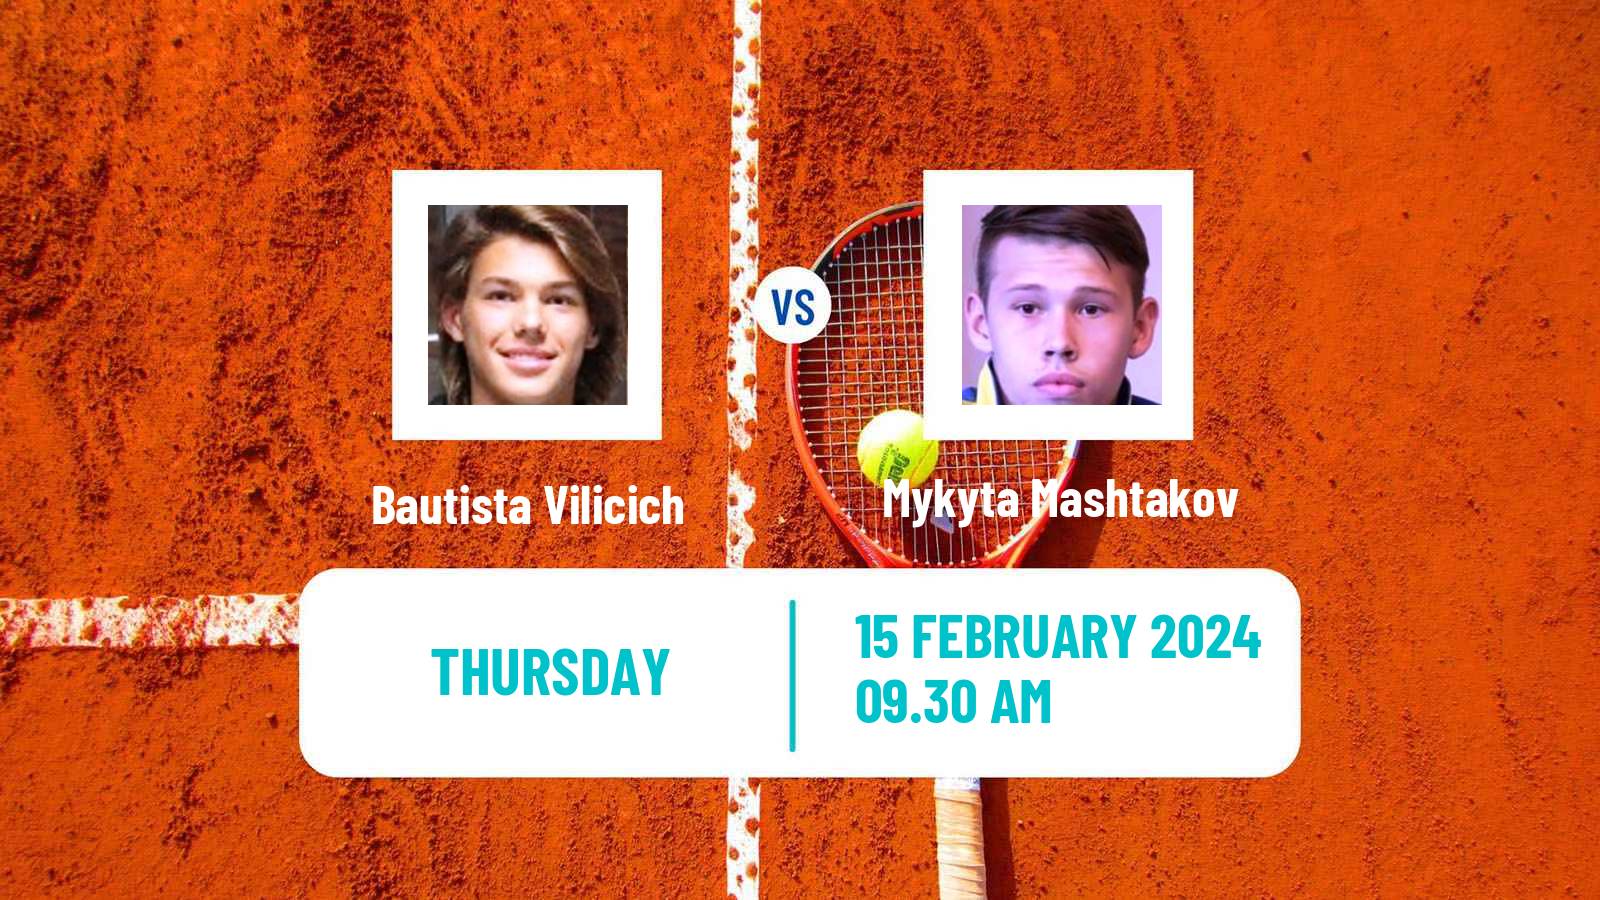 Tennis ITF M25 Antalya 3 Men Bautista Vilicich - Mykyta Mashtakov